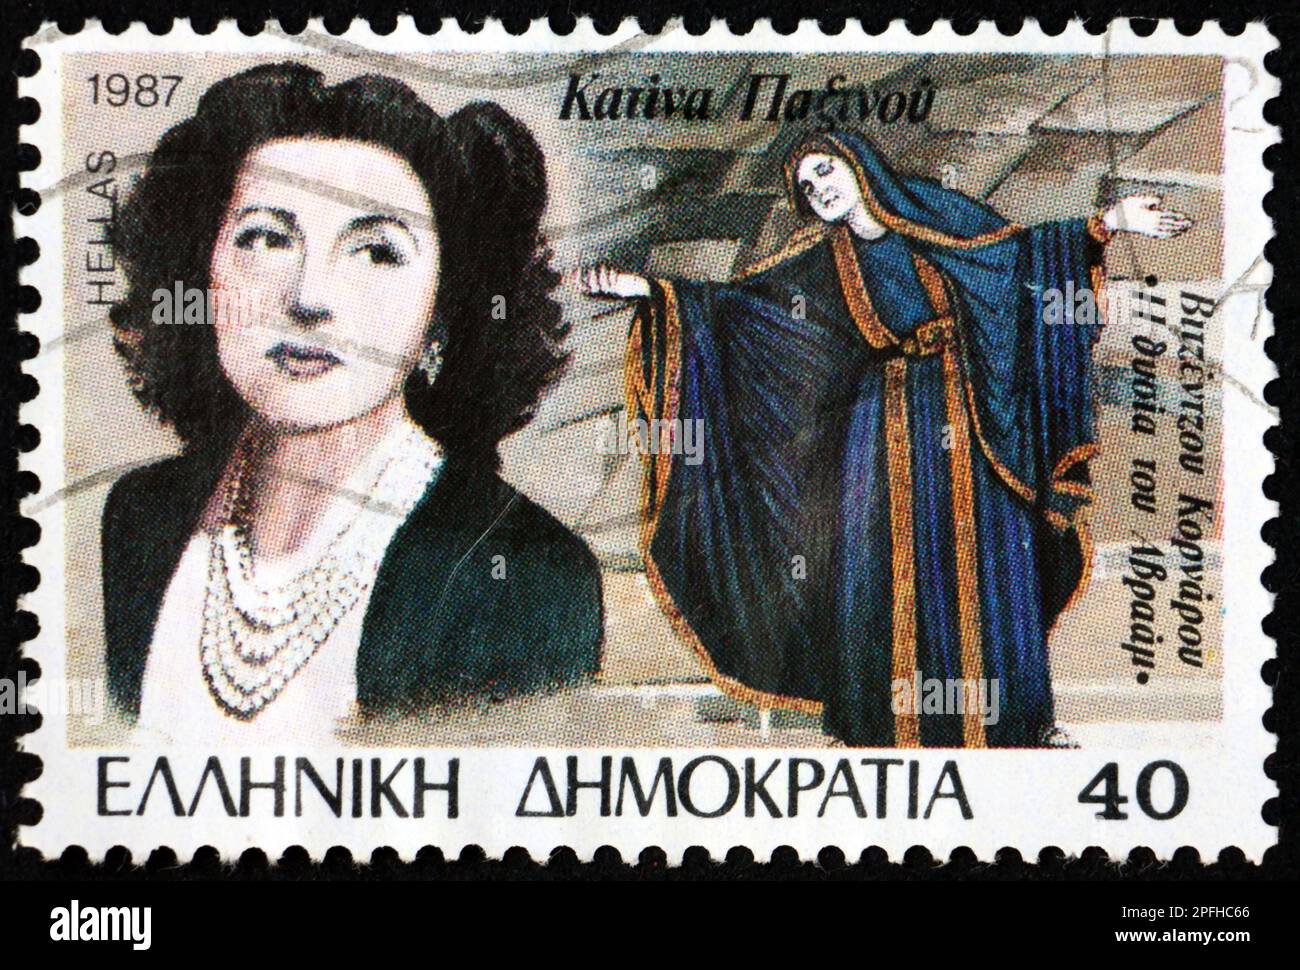 GRIECHENLAND - CIRCA 1987: Ein in Griechenland gedruckter Stempel zeigt Katina Paxinou (1900-1973) als Opfer von Abraham, einer griechischen Film- und Bühnenschauspielerin, von VI Stockfoto